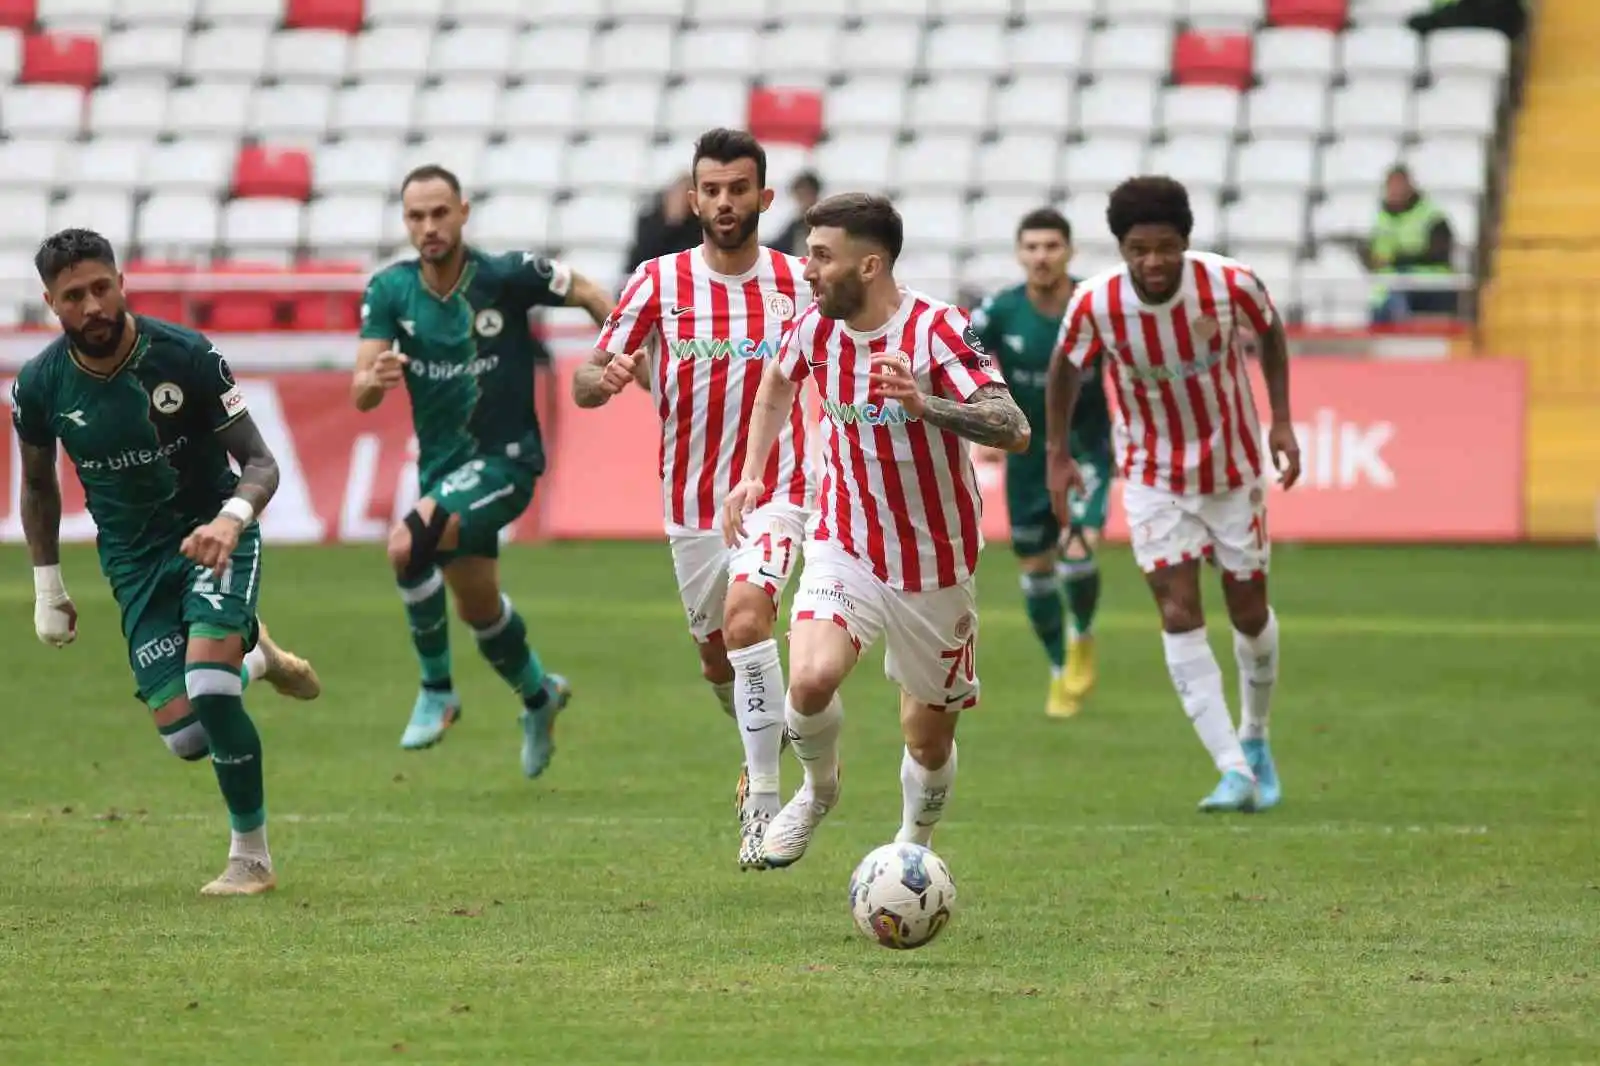 Spor Toto Süper Lig: FTA Antalyaspor: 2 - Giresunspor: 2 (Maç sonucu)
